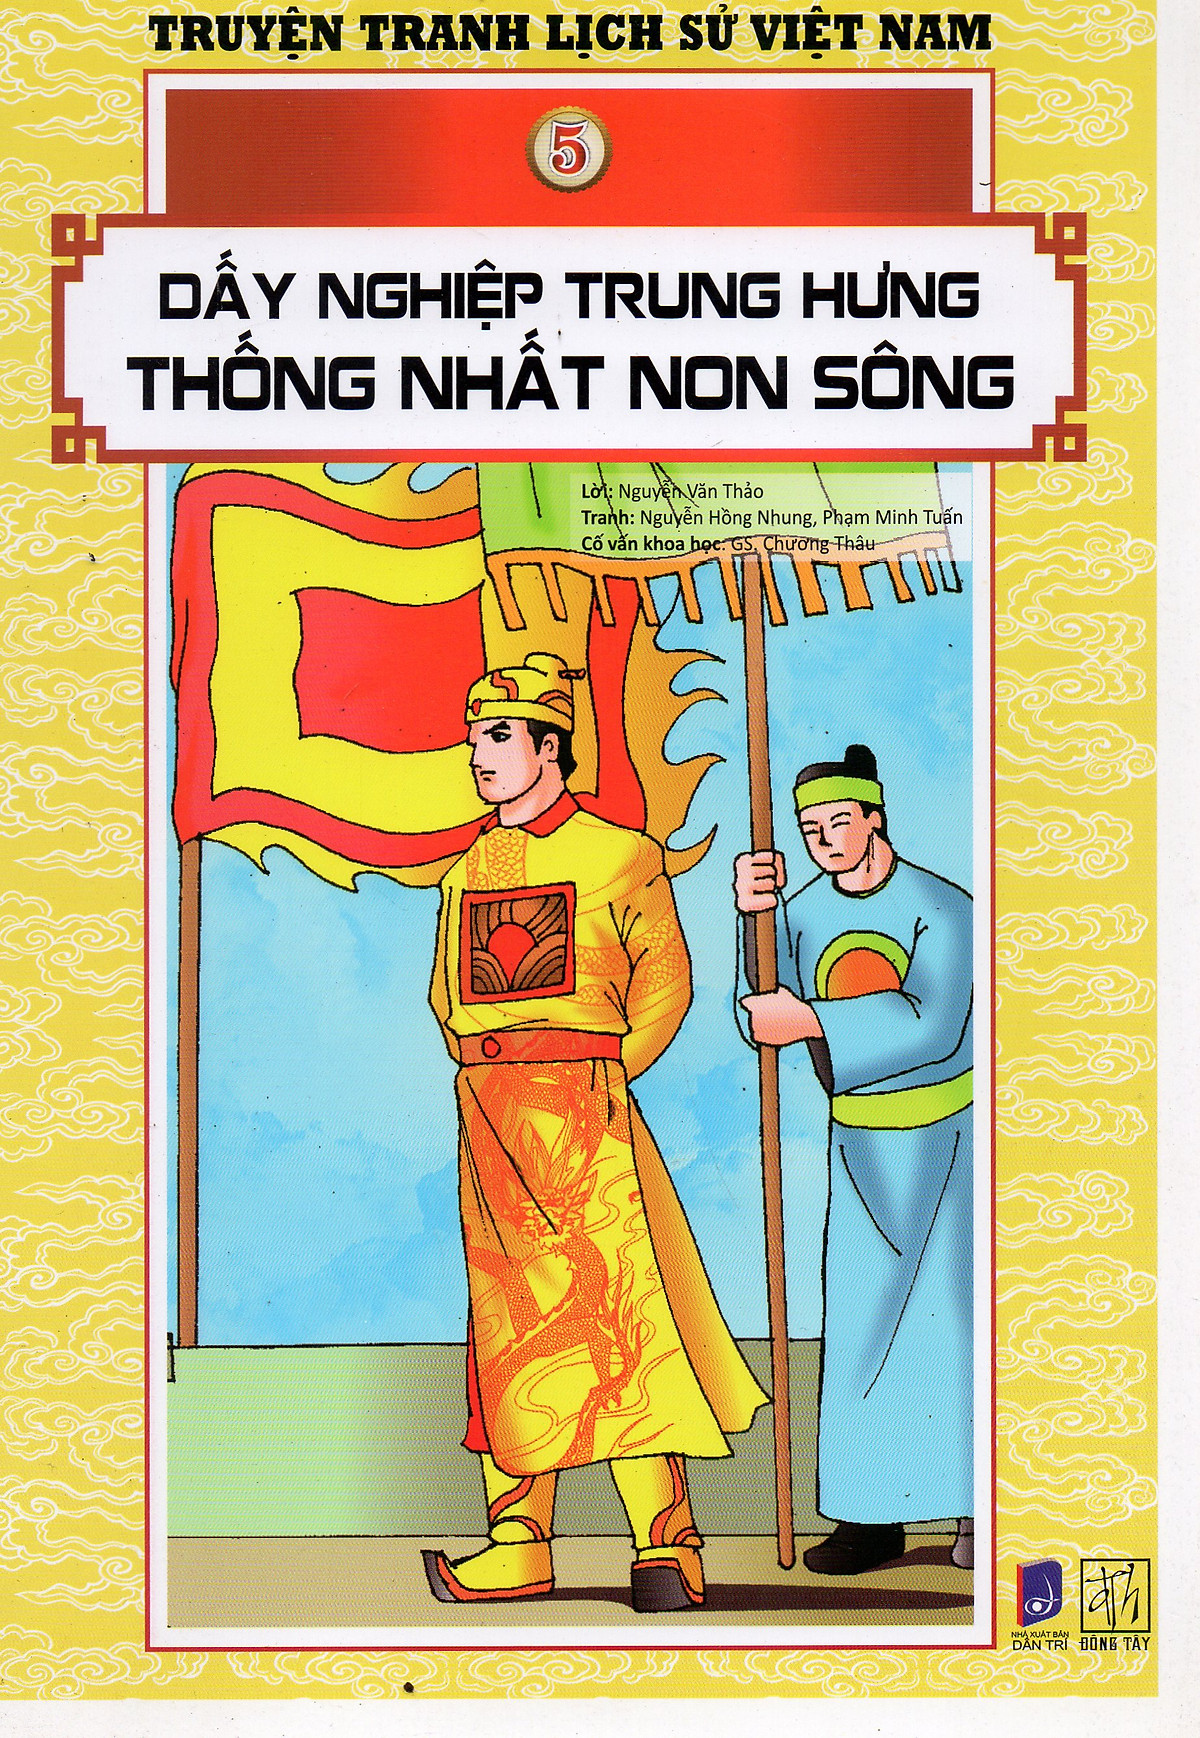 Truyện tranh lịch sử Việt Nam - Dấy nghiệp trung hưng thống nhất non sông (Tranh màu)